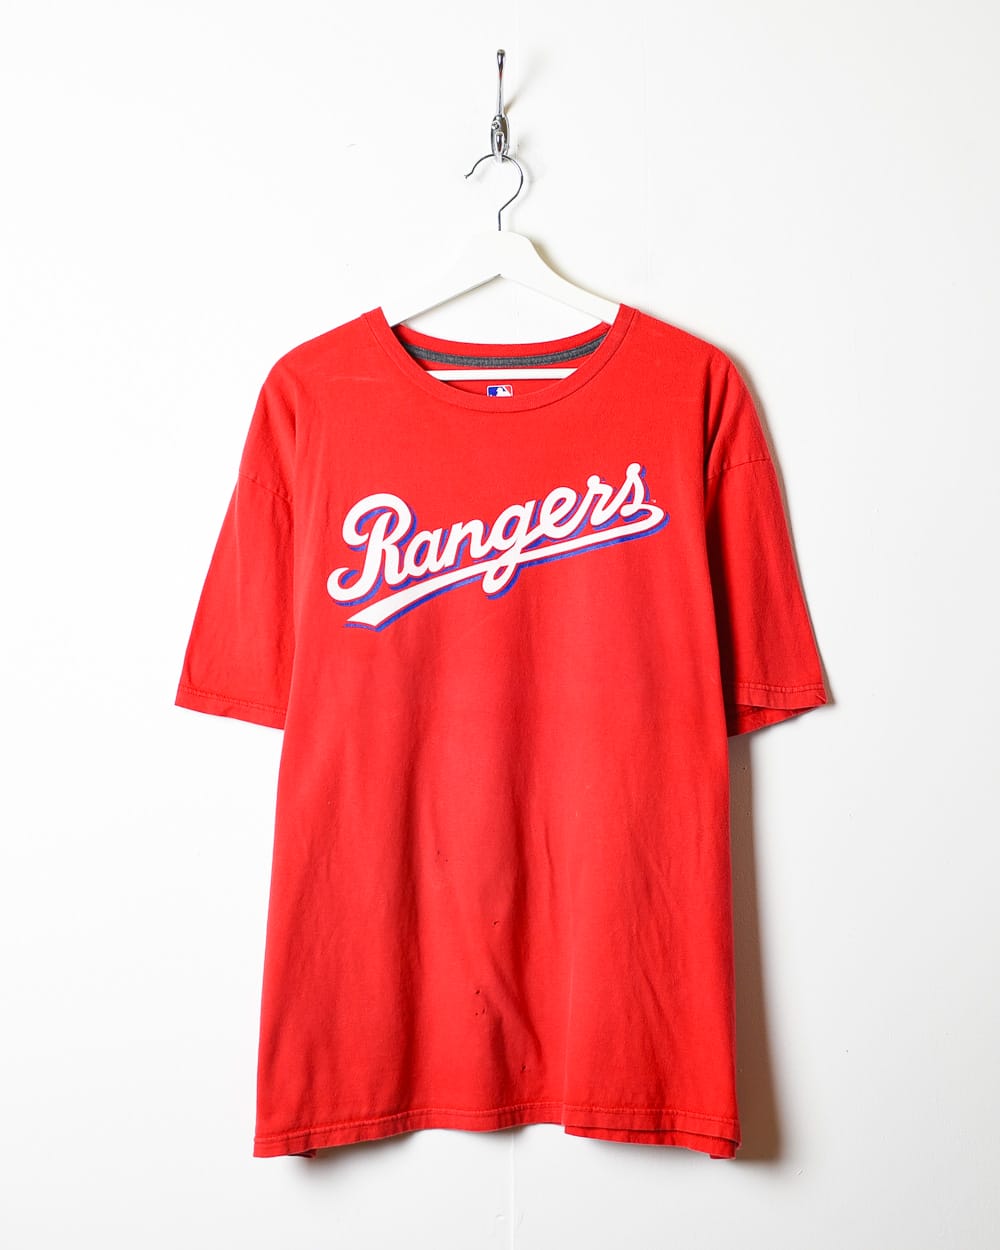 Texas Rangers T-shirts in Texas Rangers Team Shop